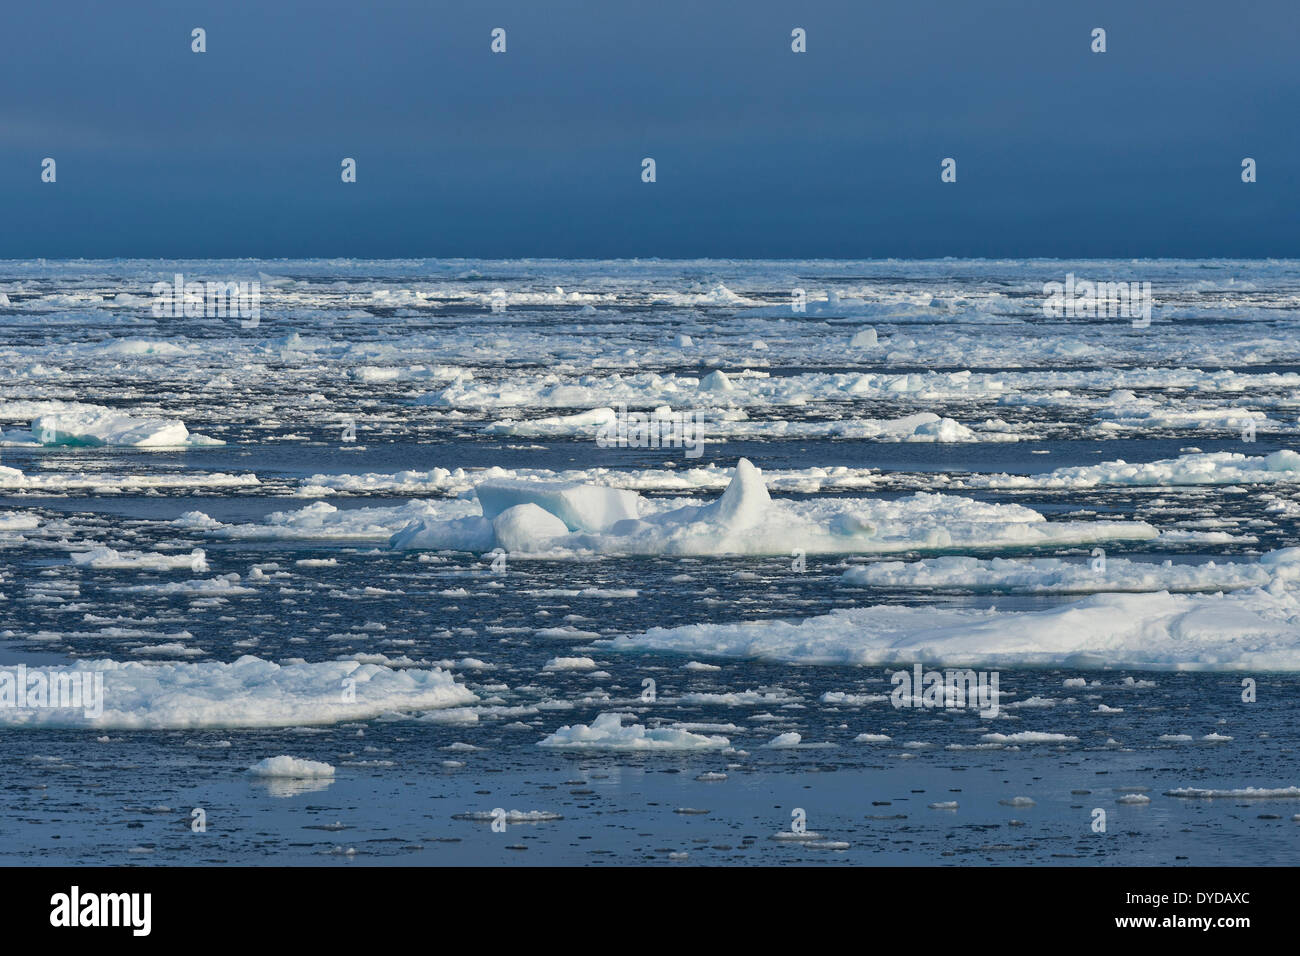 Des blocs de glace, la bordure de la banquise, l'océan Arctique, l'archipel du Svalbard, l'île de Spitsbergen, Svalbard et Jan Mayen (Norvège) Banque D'Images